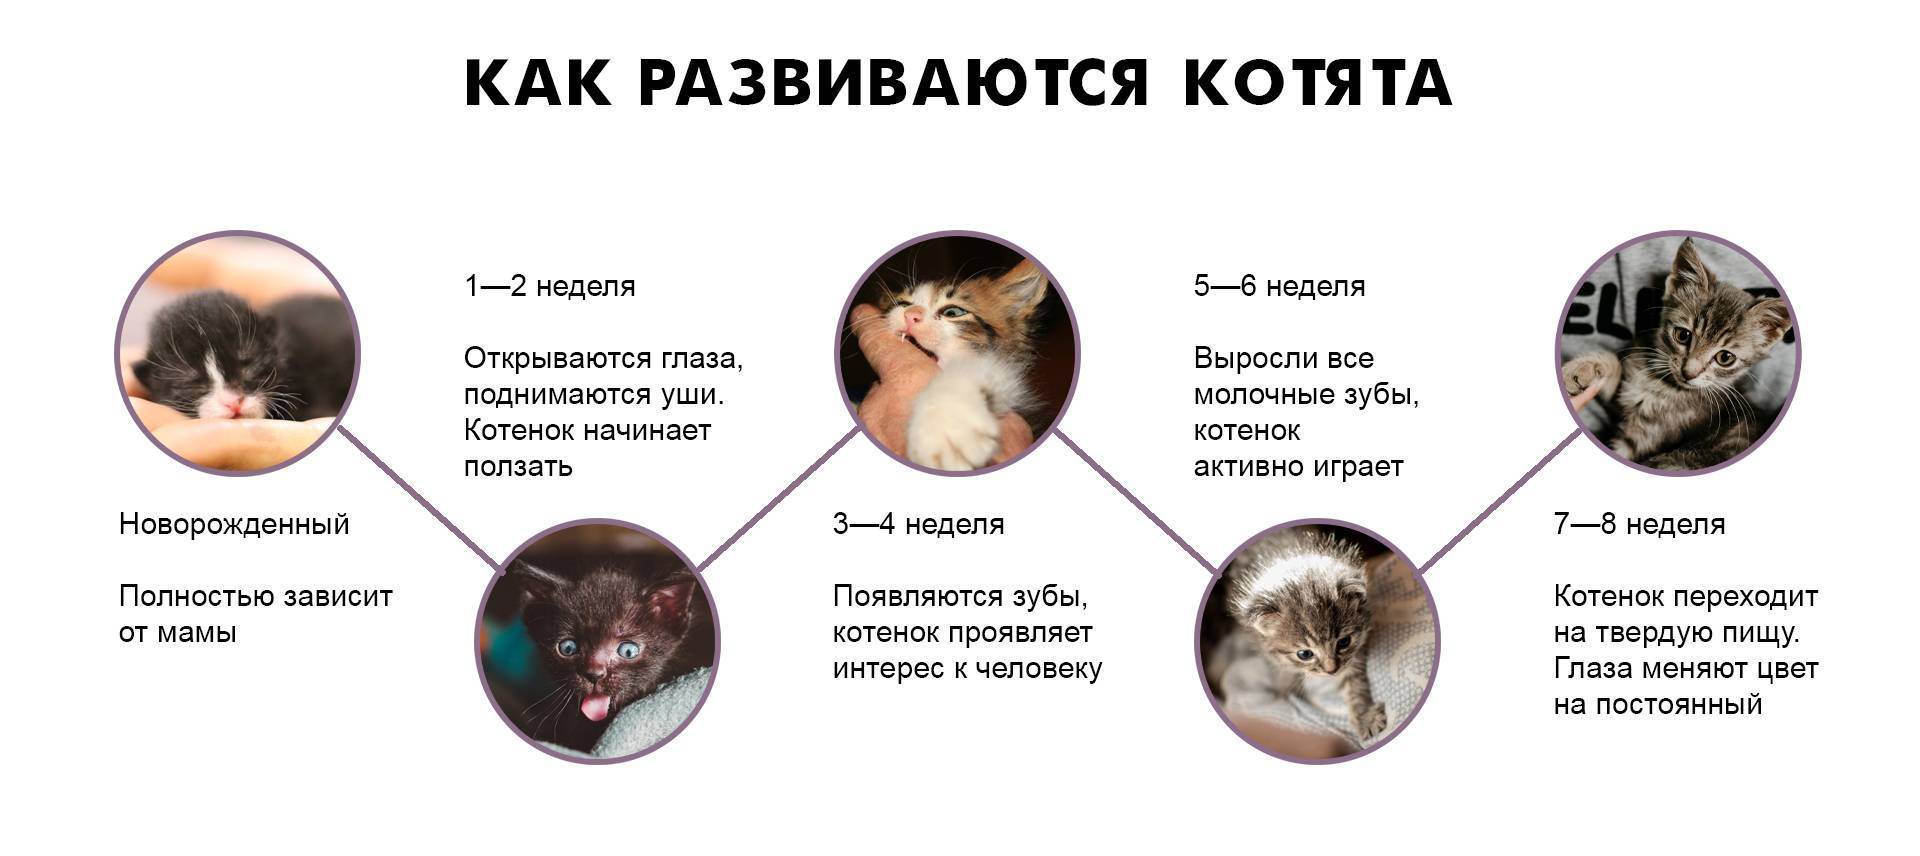 Как определить возраст котенка в домашних условиях: таблица стандартов | ваши питомцы